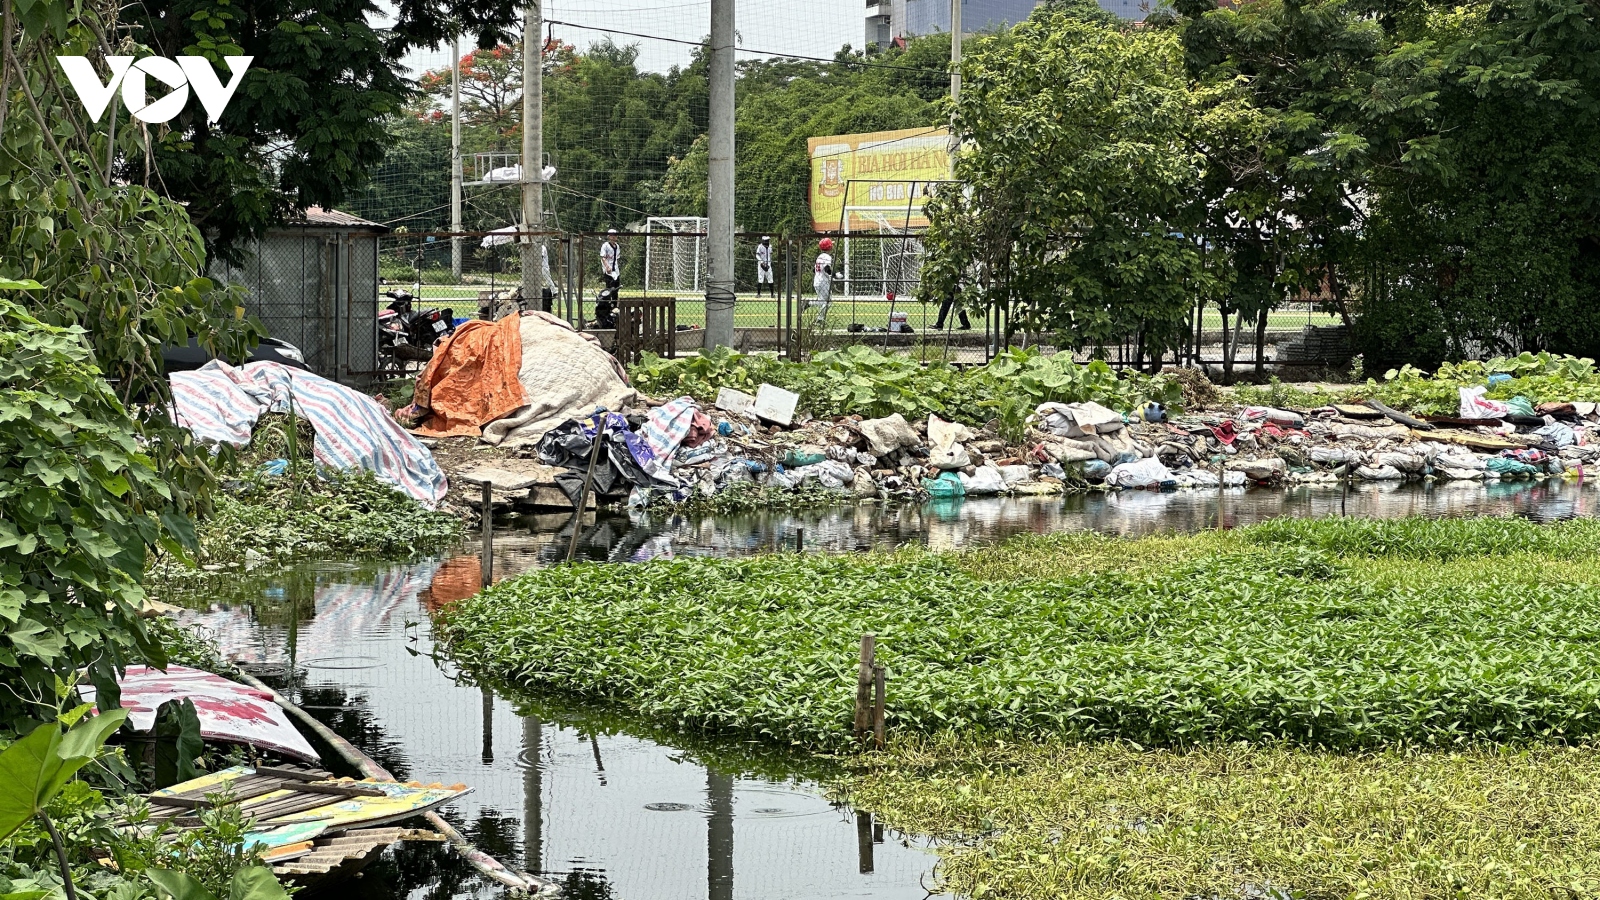 Hà Nội: Nhiều diện tích ao, hồ ở nội thành sắp biến mất vì xâm lấn đổ phế thải